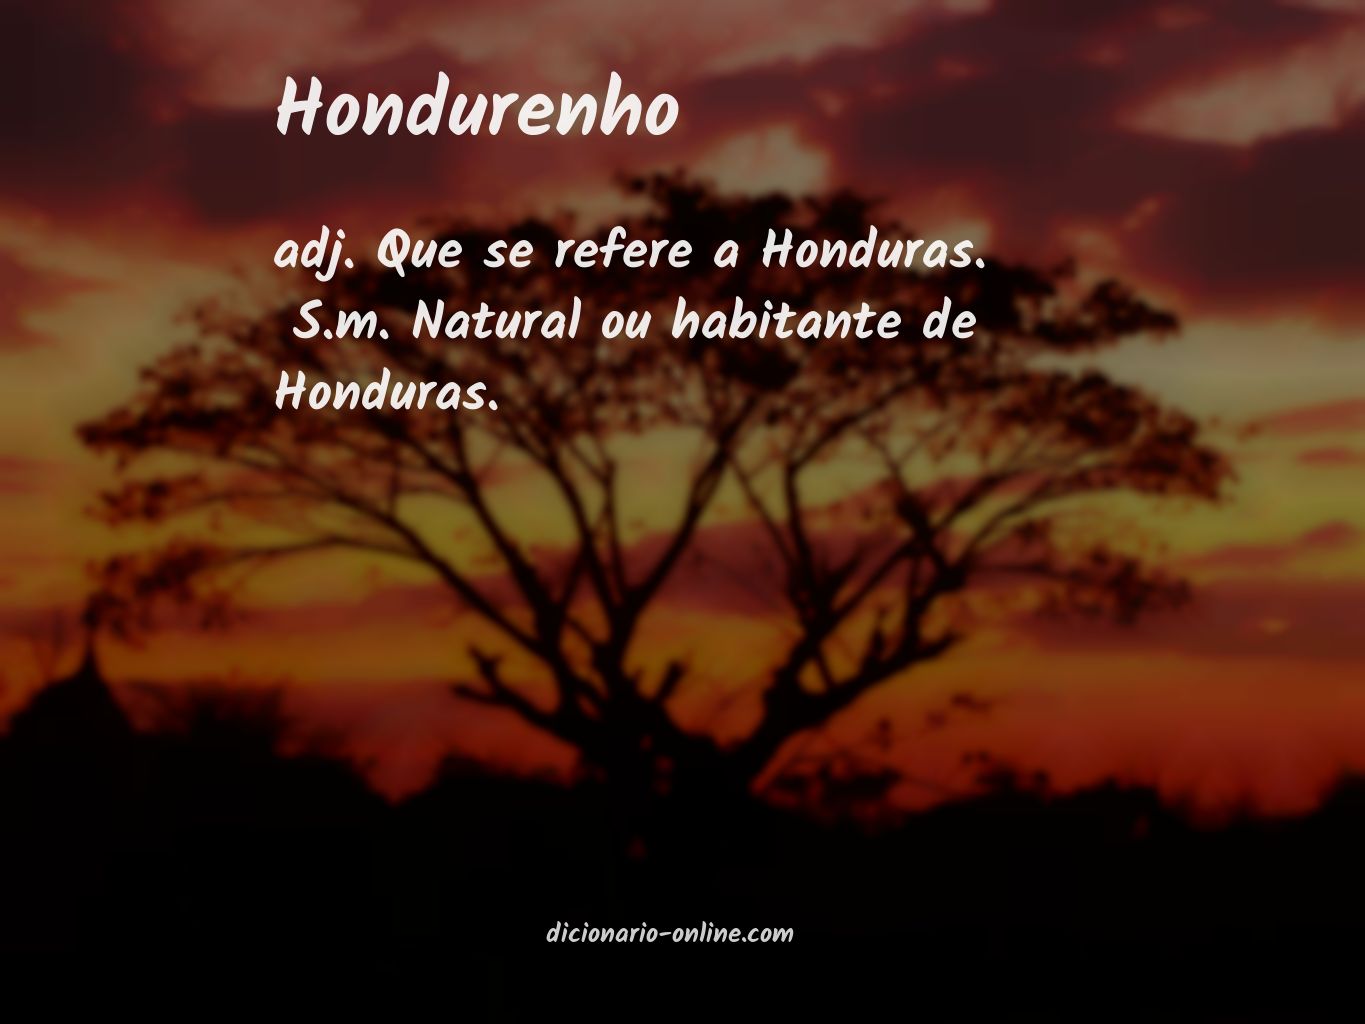 Significado de hondurenho